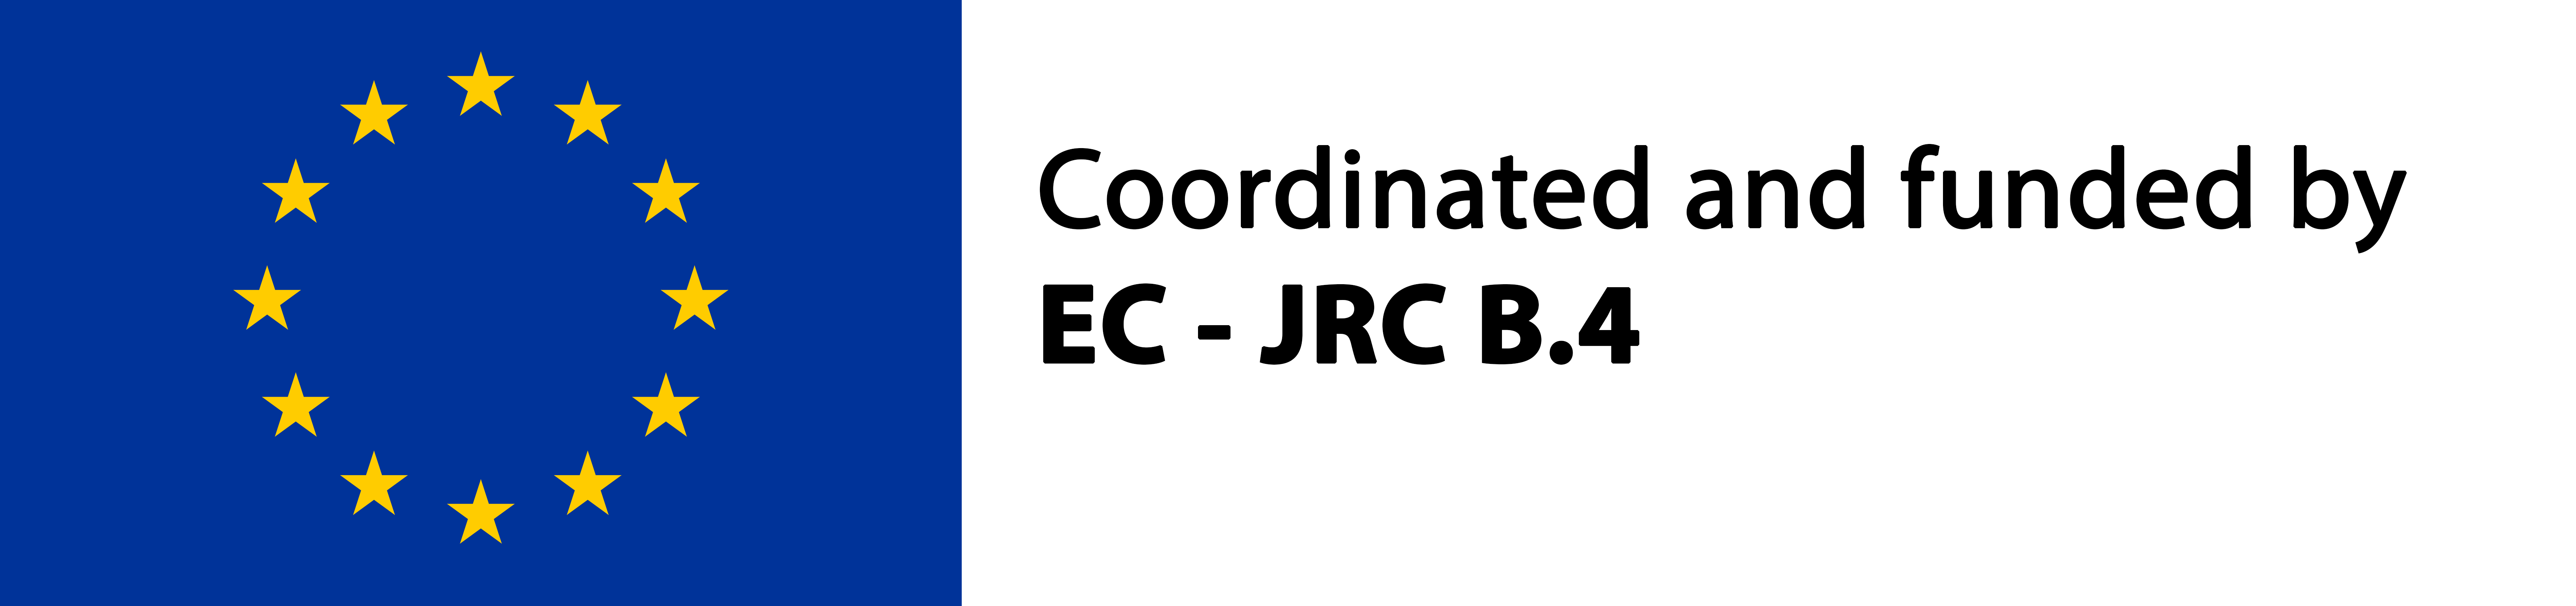 EC - JRC B.4 Logo